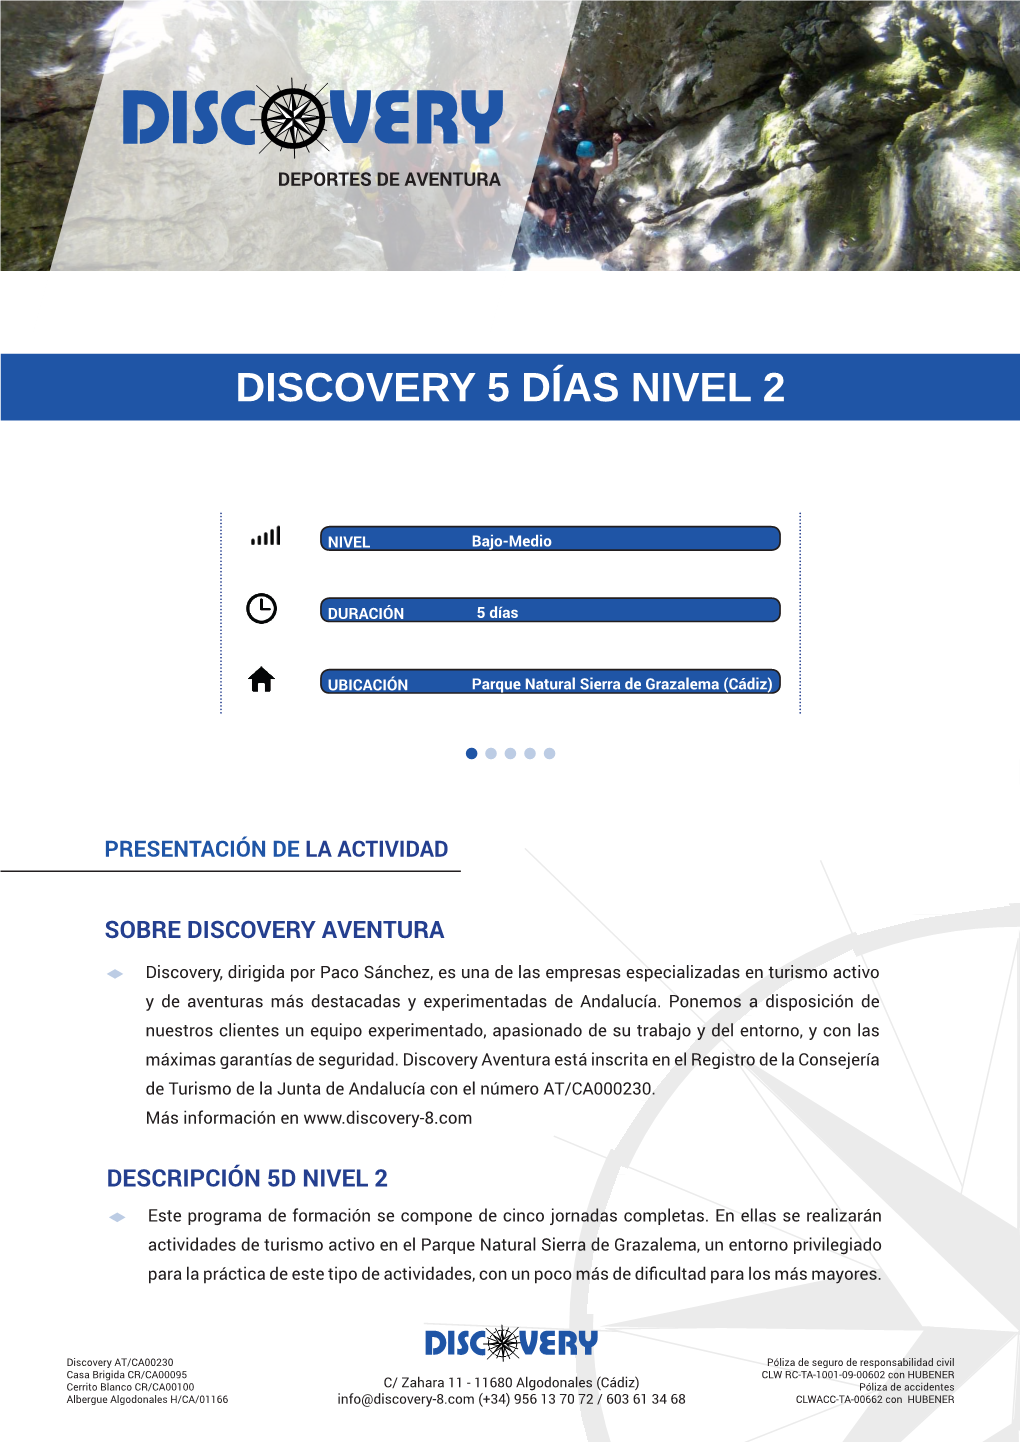 Discovery 5 Días Nivel 2